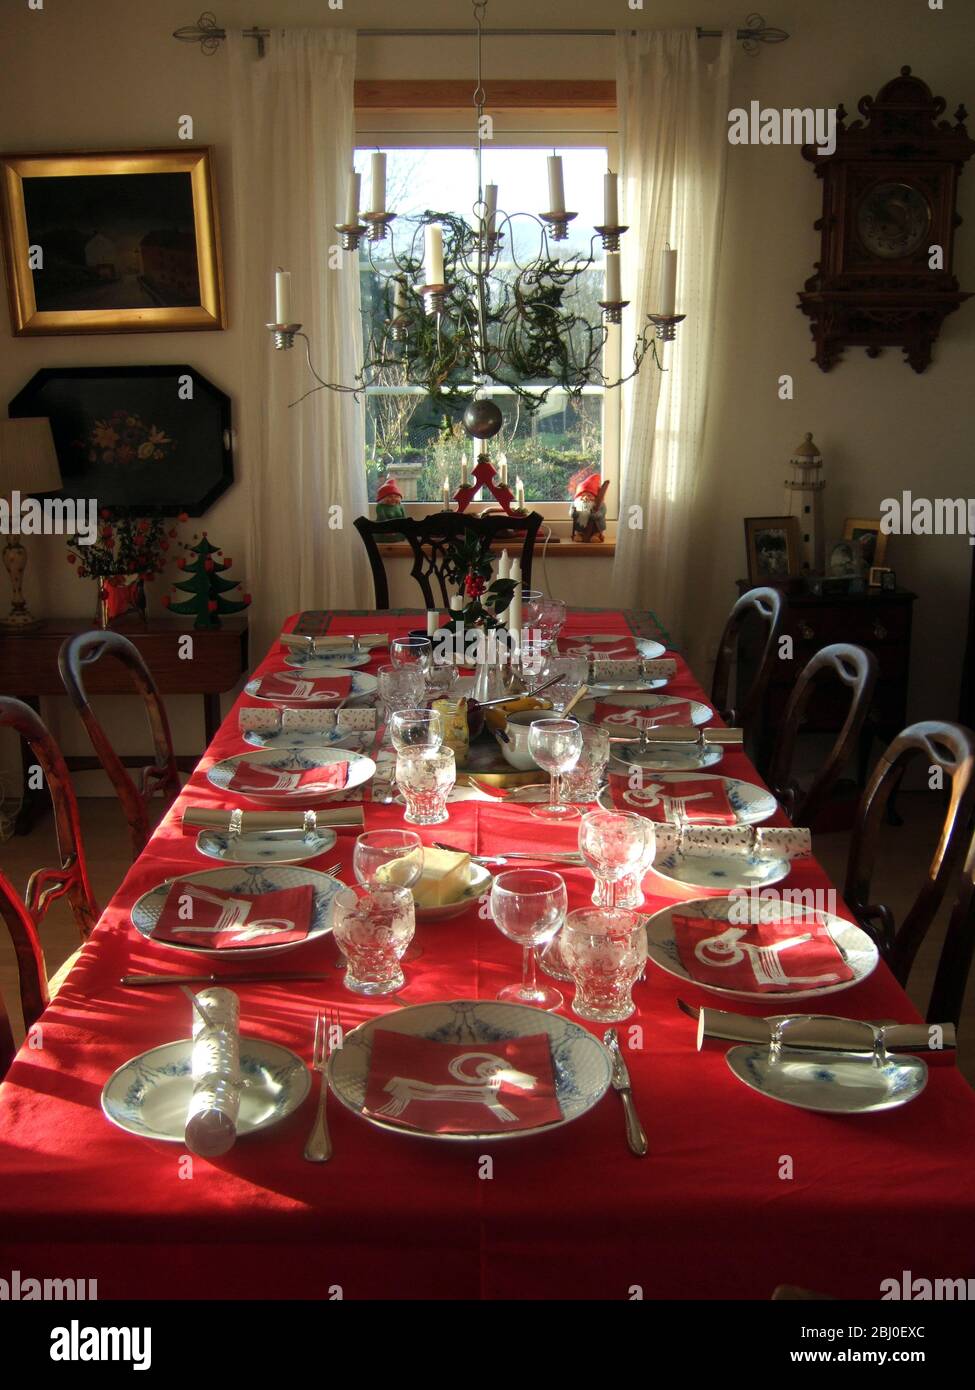 Sonnenlicht scheint in auf der Innenseite mit langen Tisch für Weihnachtsessen mit roten Tischdecke und beste china gelegt, - Stockfoto